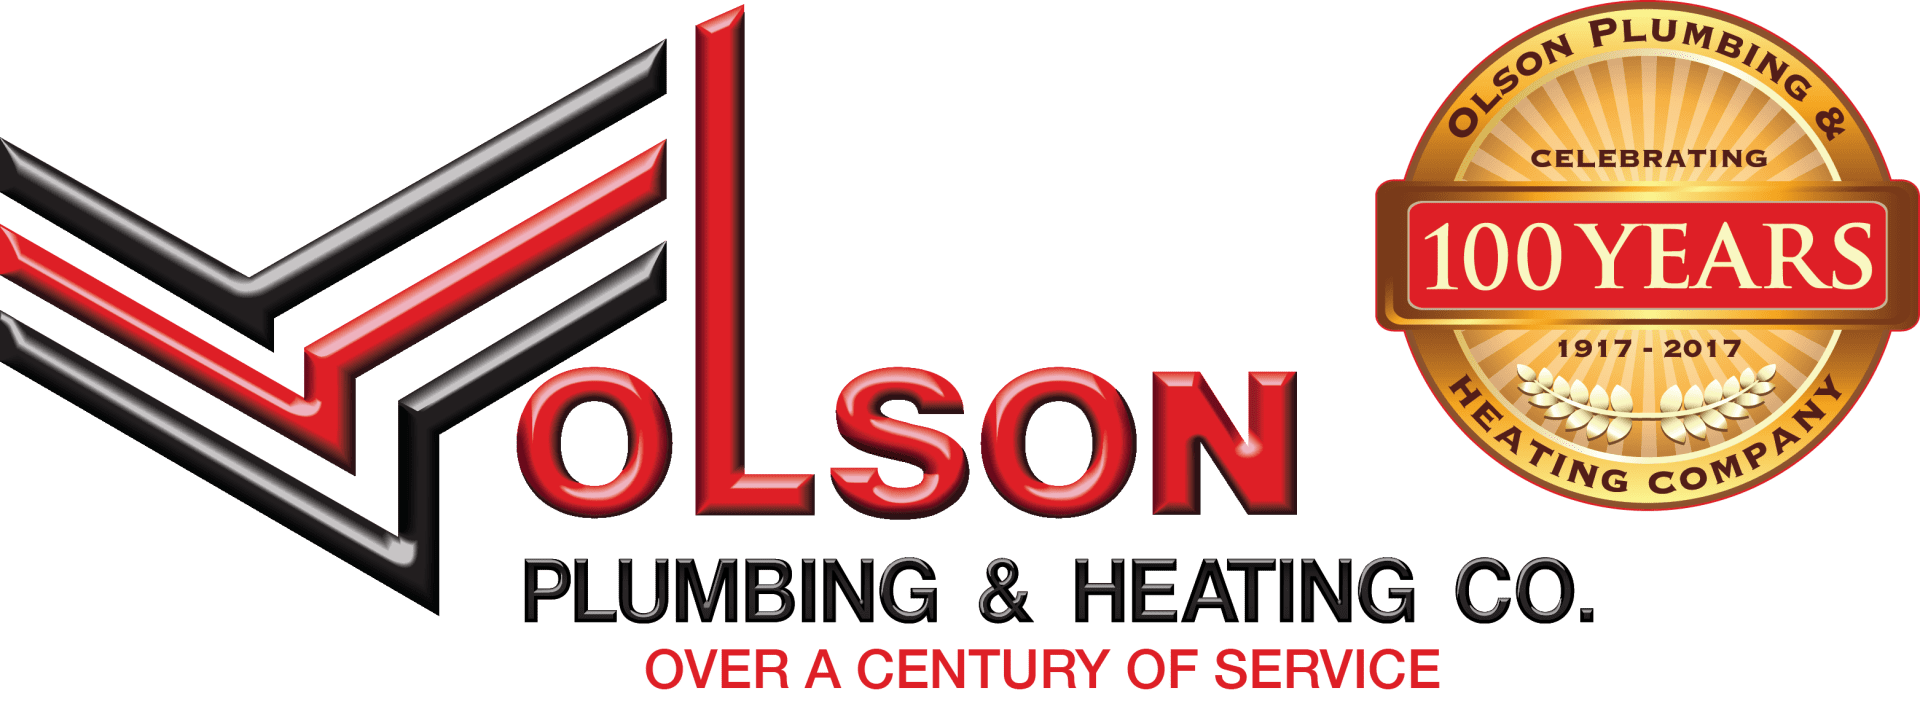 olson plumbing logo